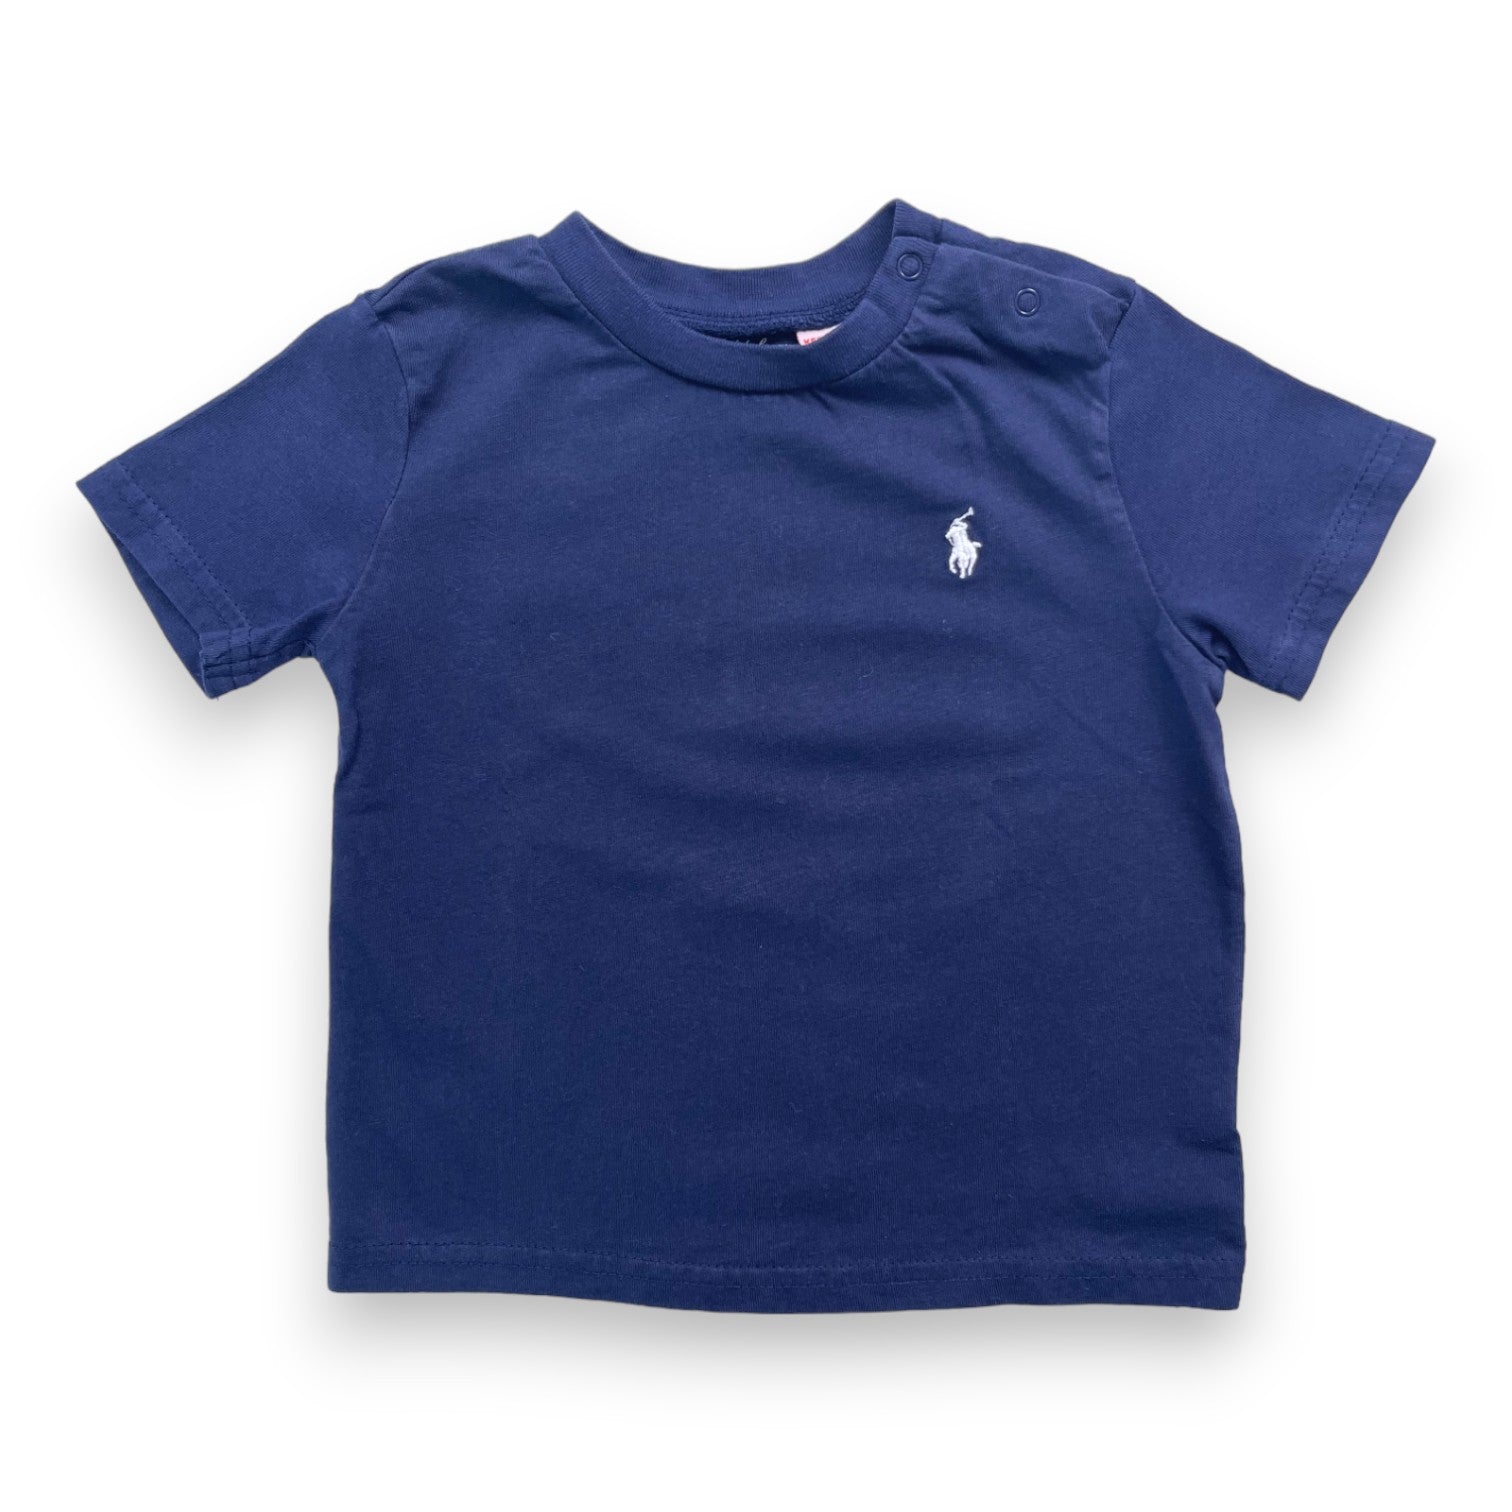 RALPH LAUREN - T shirt bleu marine logo brodé - 12 mois